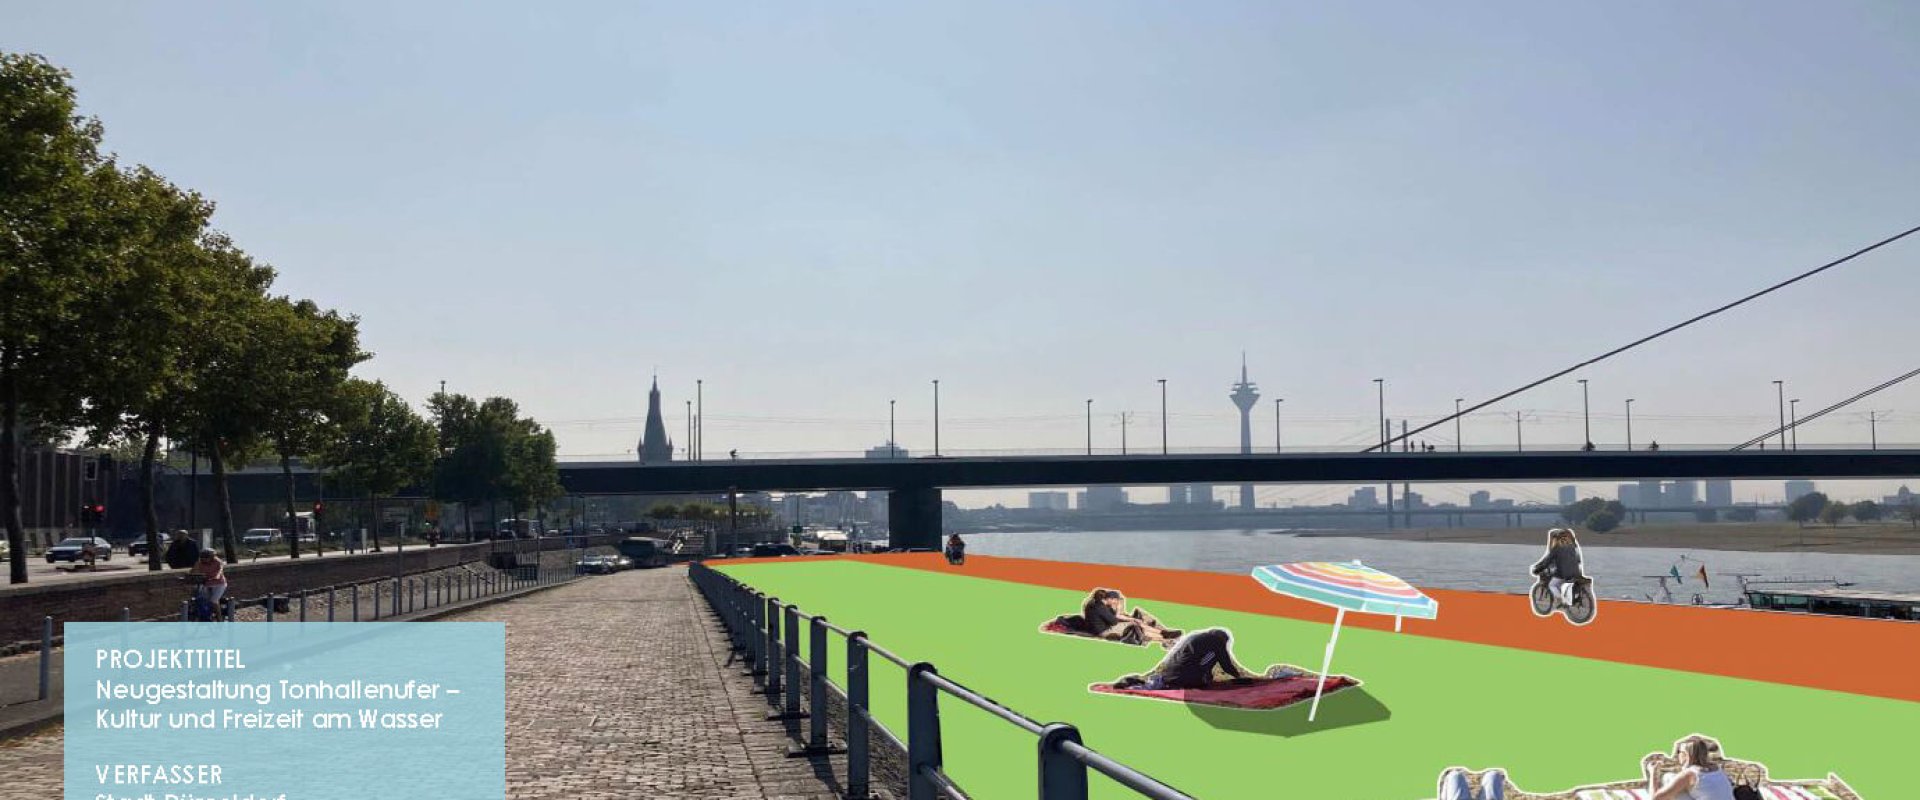 Neugestaltung Tonhallenufer -Kultur und Freizeit am Wasser - Stadt Düsseldorf